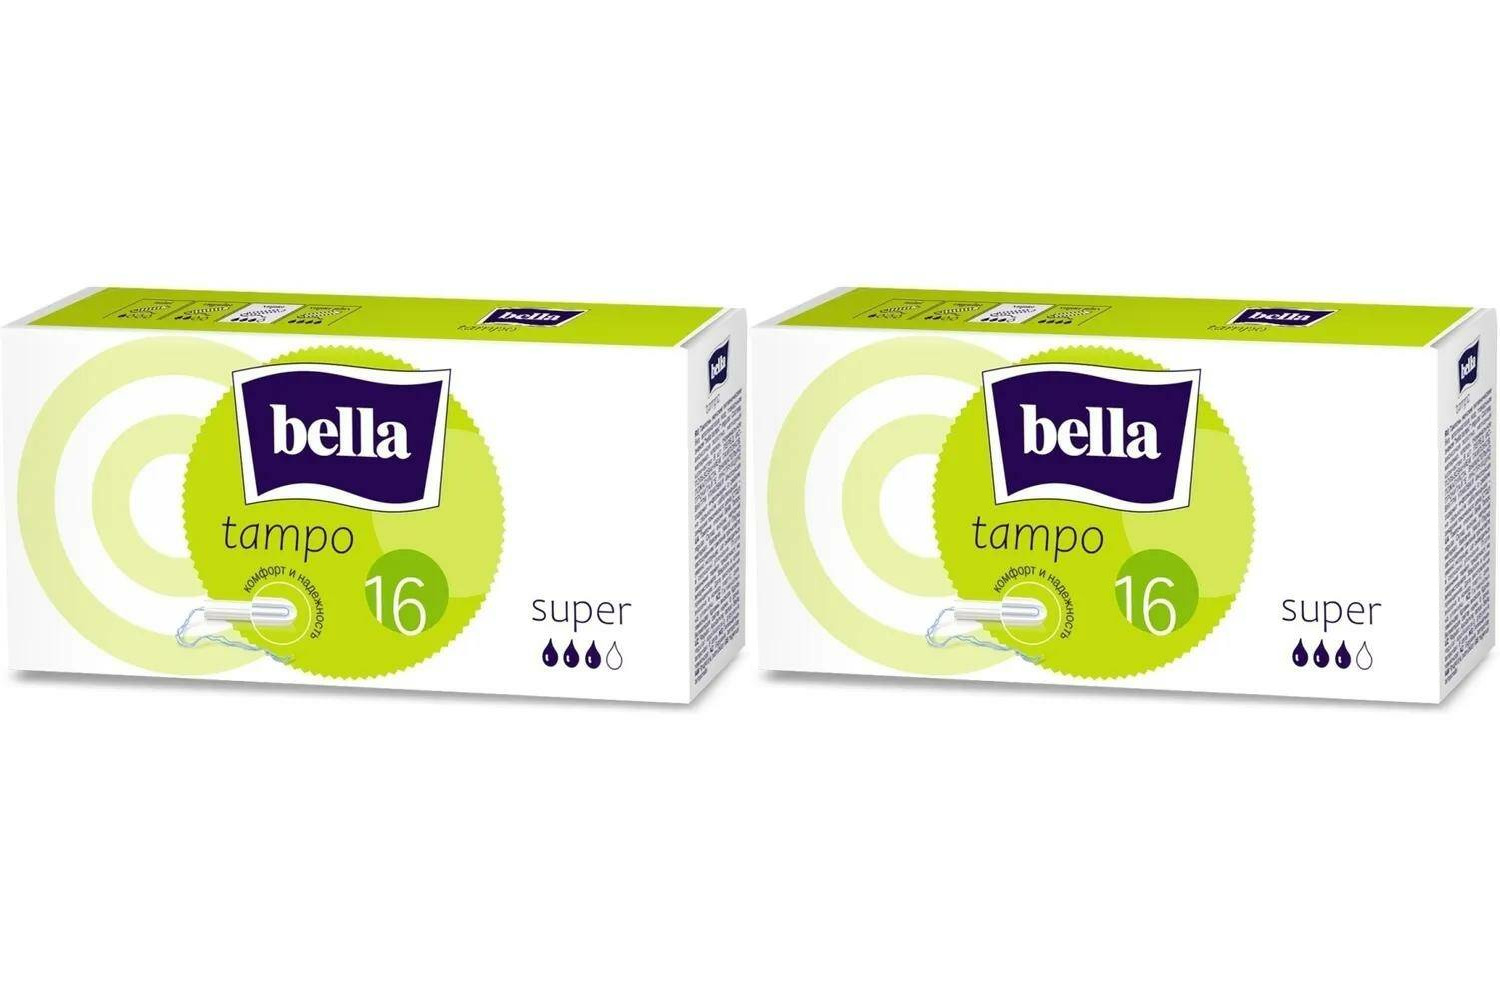 Тампоны Bella tampo Super premium comfort 2 уп х 16 шт тампоны bella premium comfort regular без аппликатора 16 шт